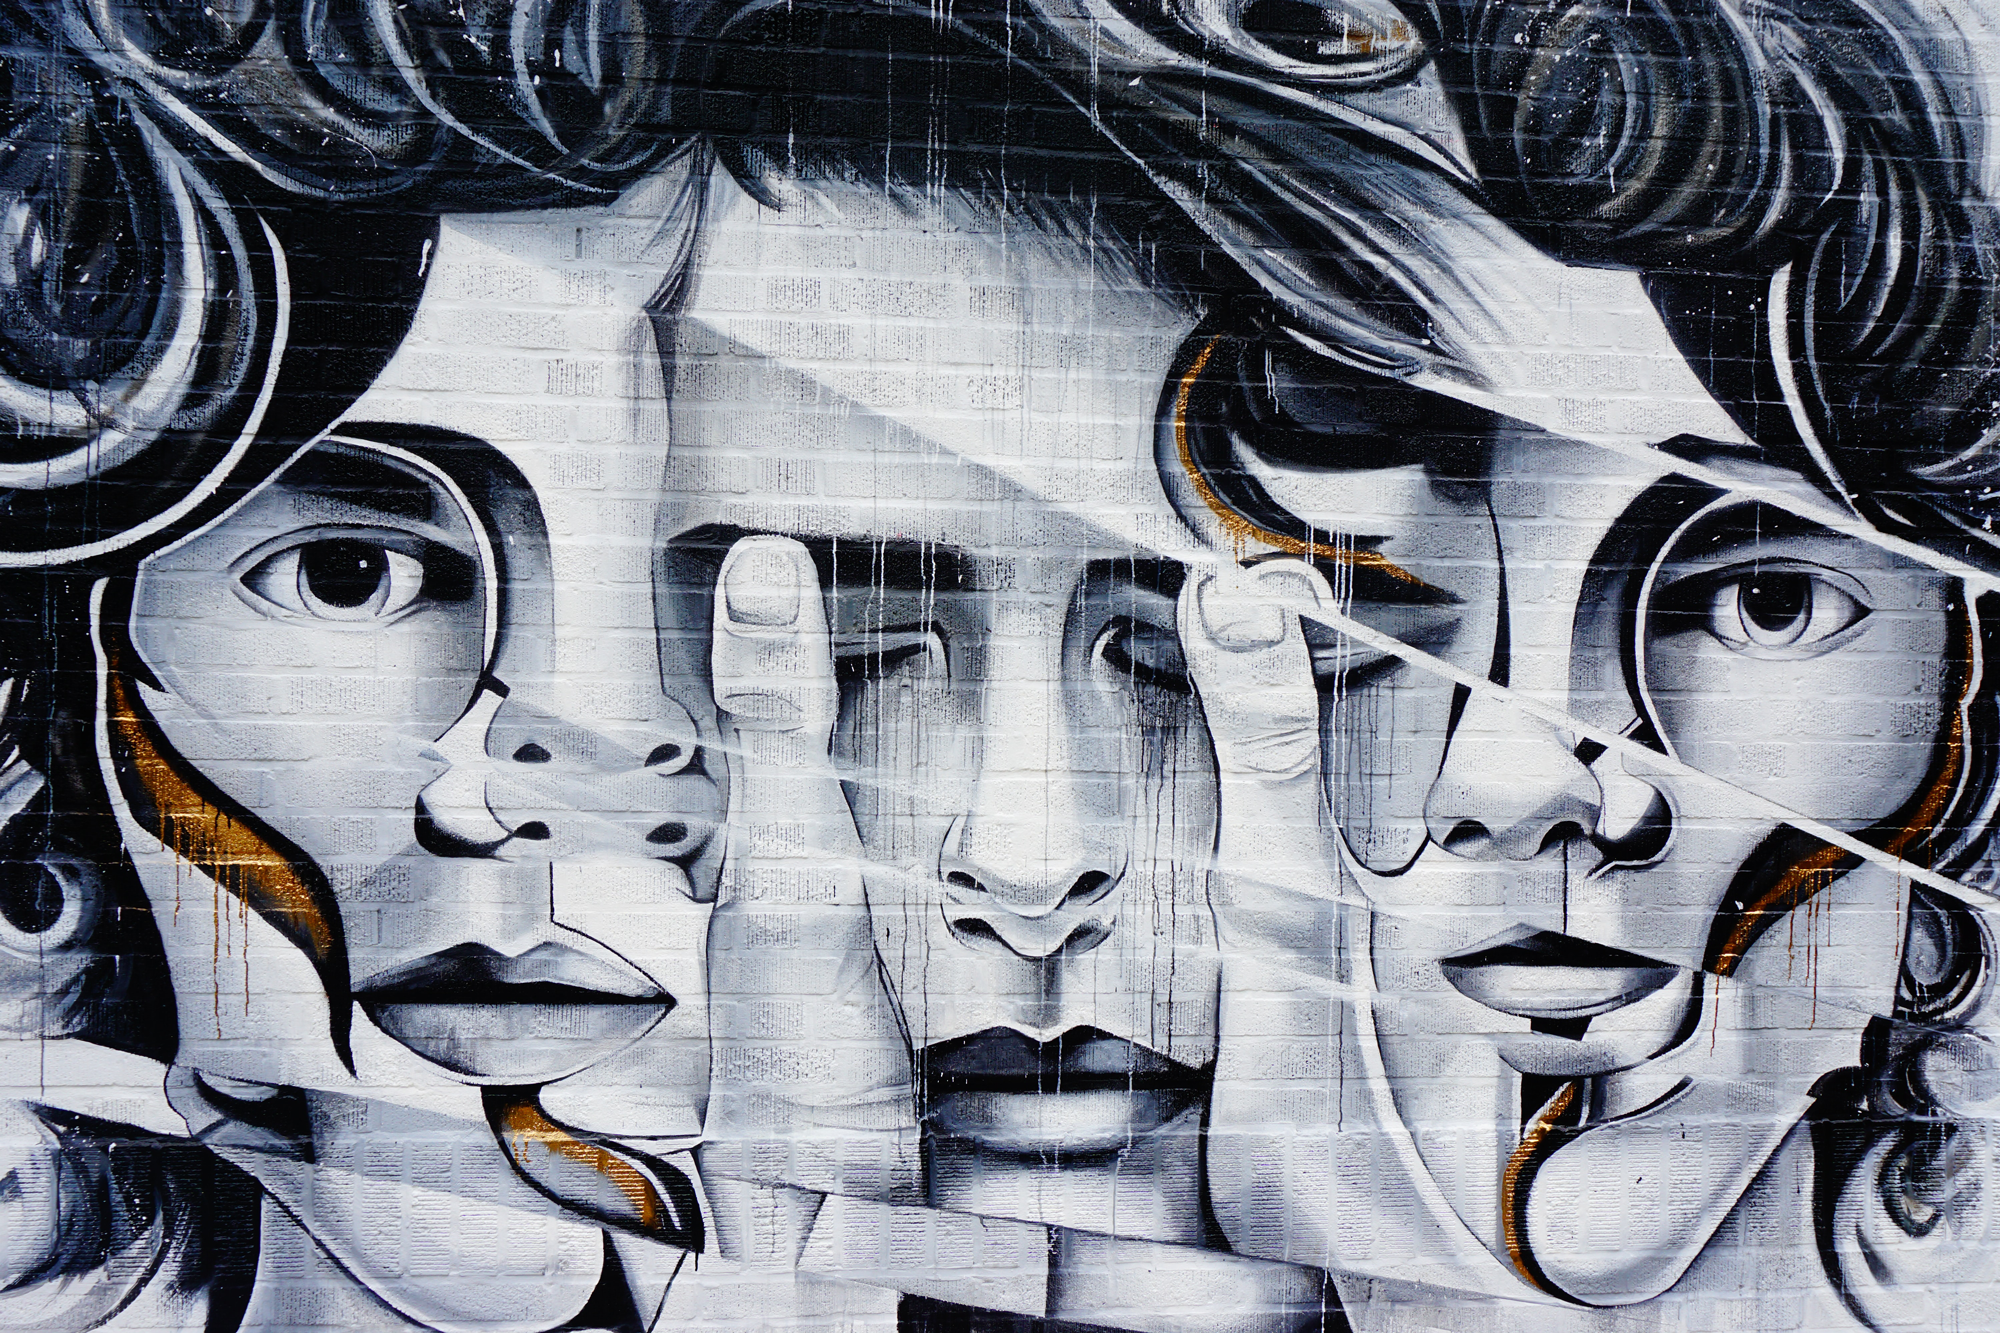 3 abstracte gezichten in graffiti op een muur